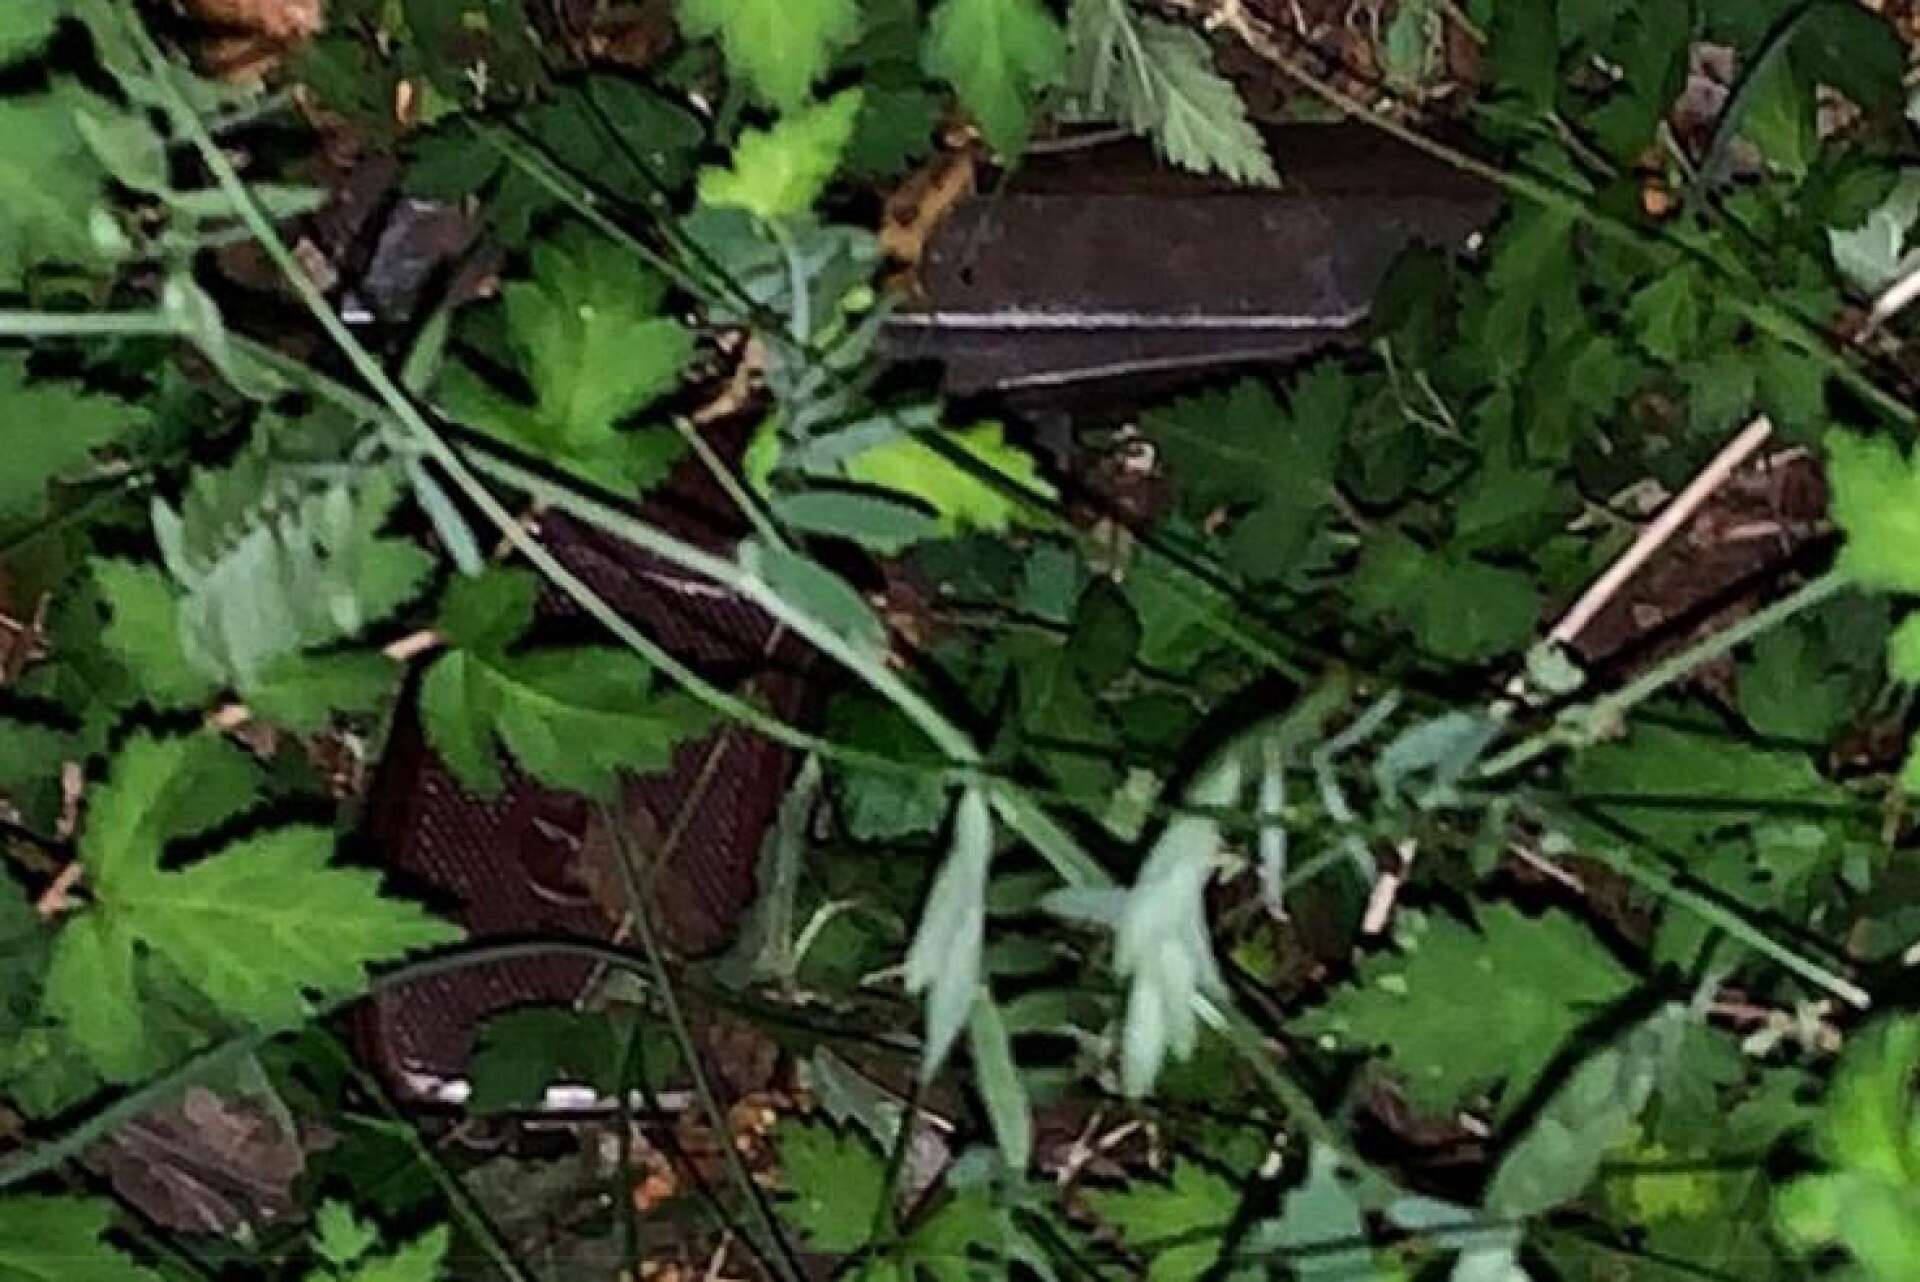 I en buske på Rud i Karlstad fann polisen ett skjutklart vapen. En 19-åring greps samtidigt och har dömts för grovt vapenbrott.